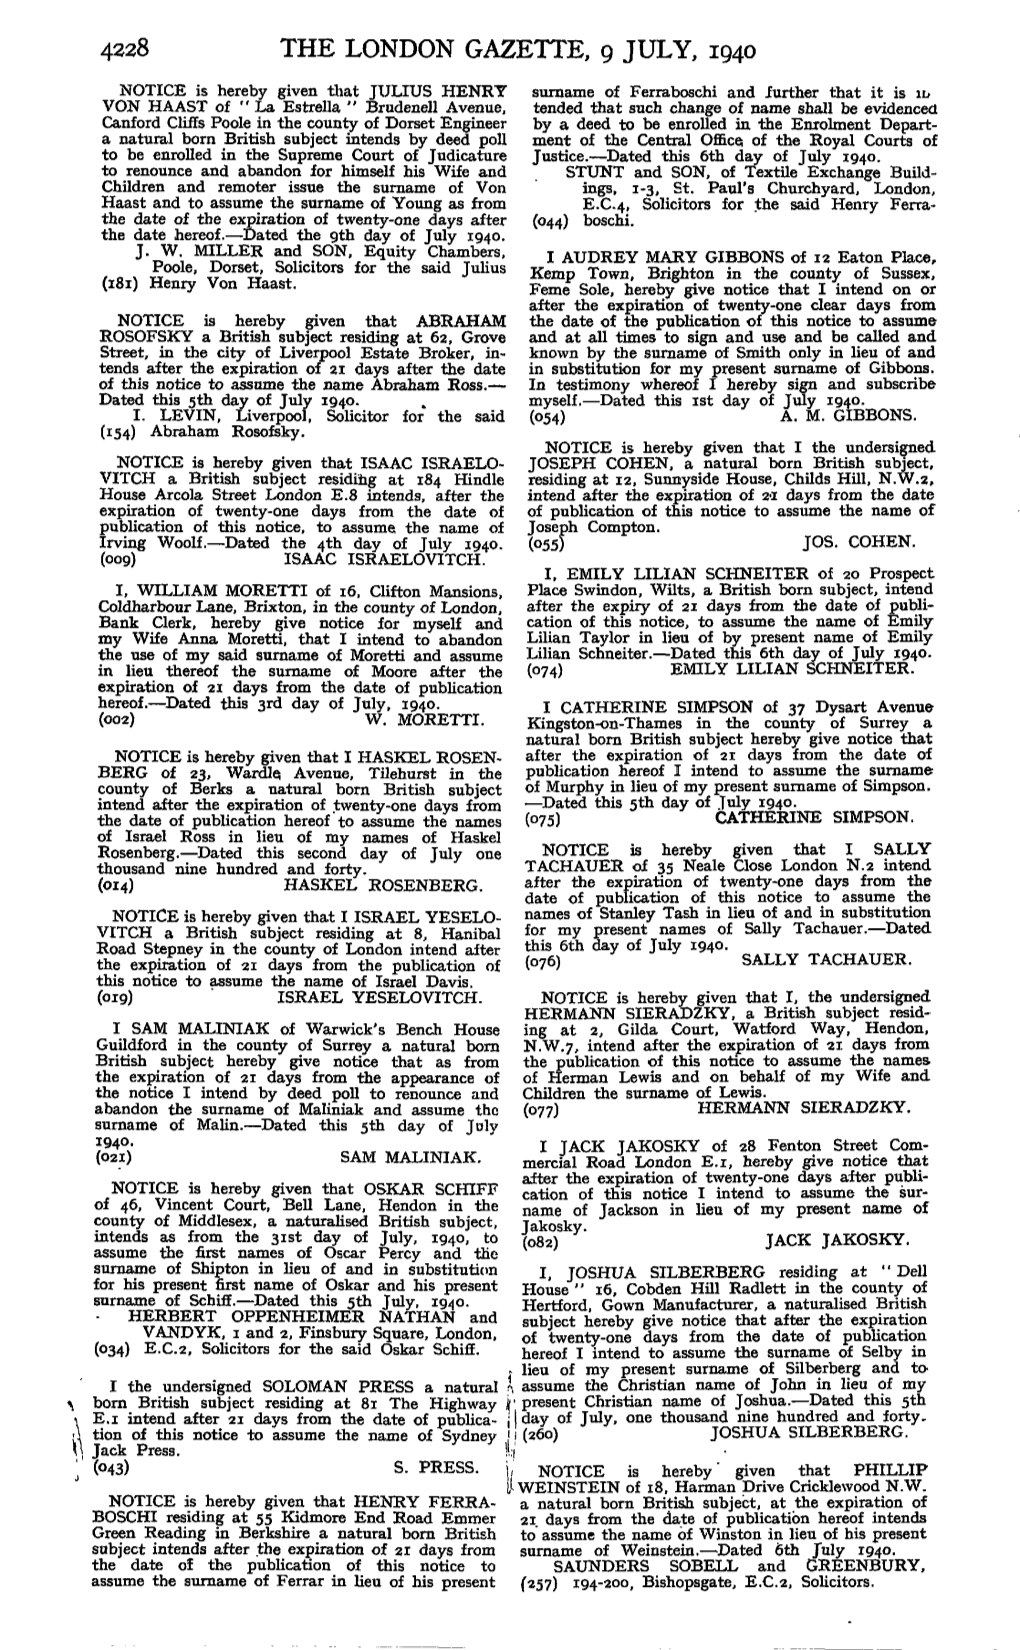 4228 the London Gazette, 9 July, 1940